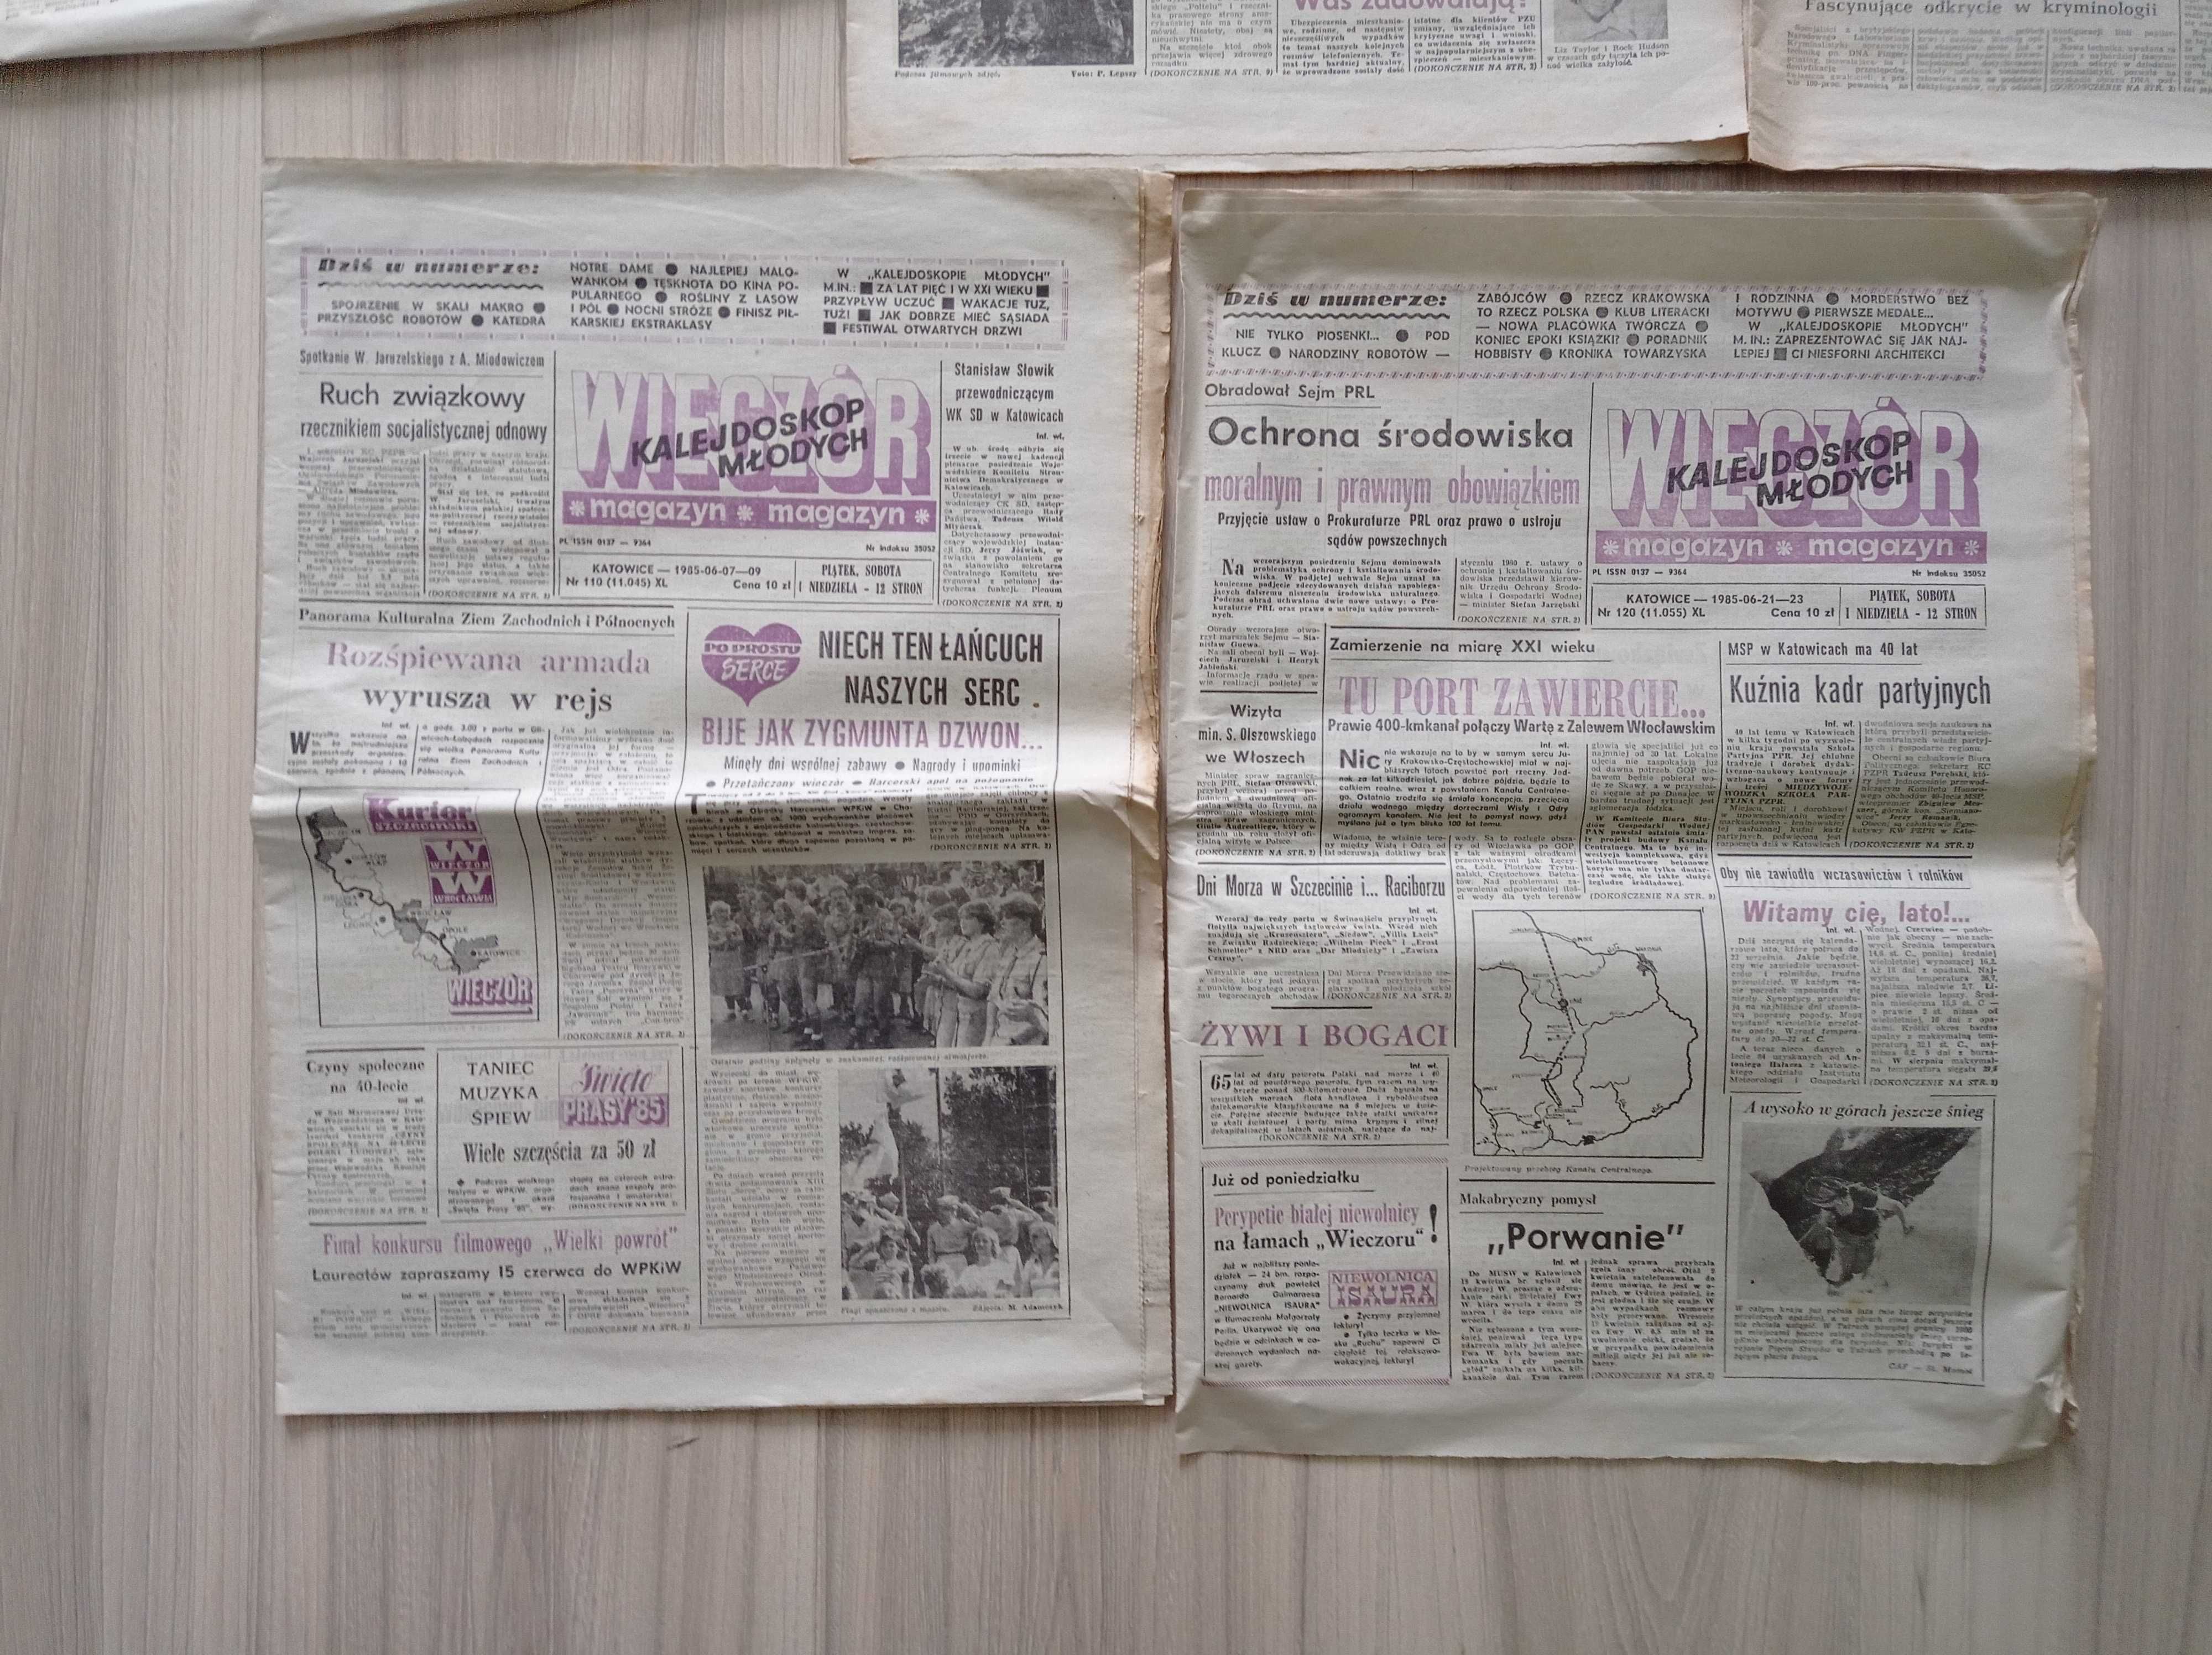 Wieczór magazyn, 1986 i 1985 rok, zestaw